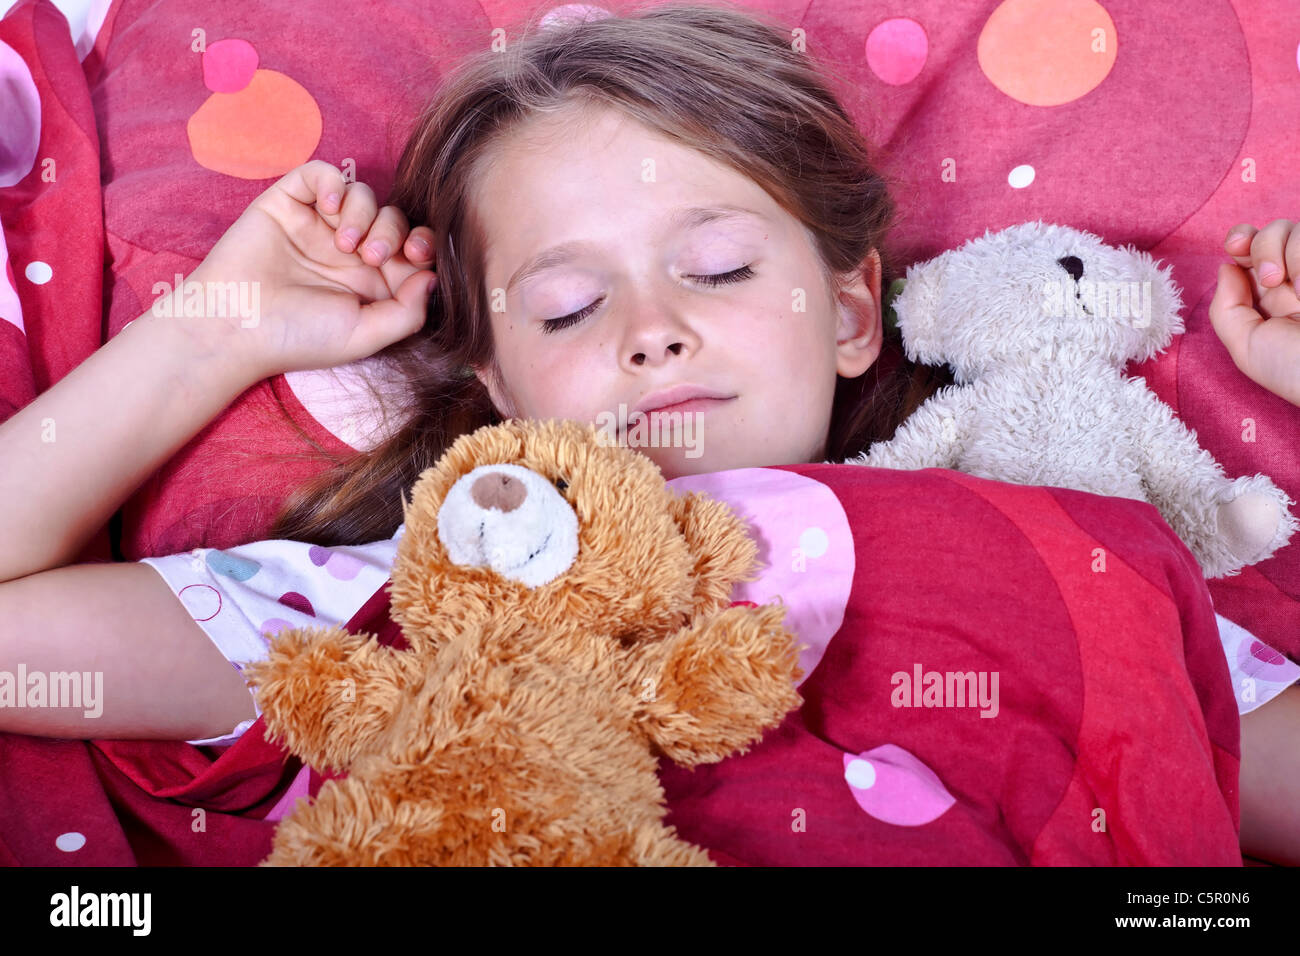 Una niña de ocho años de edad en la cama con mantas y almohadas y peluches Foto de stock